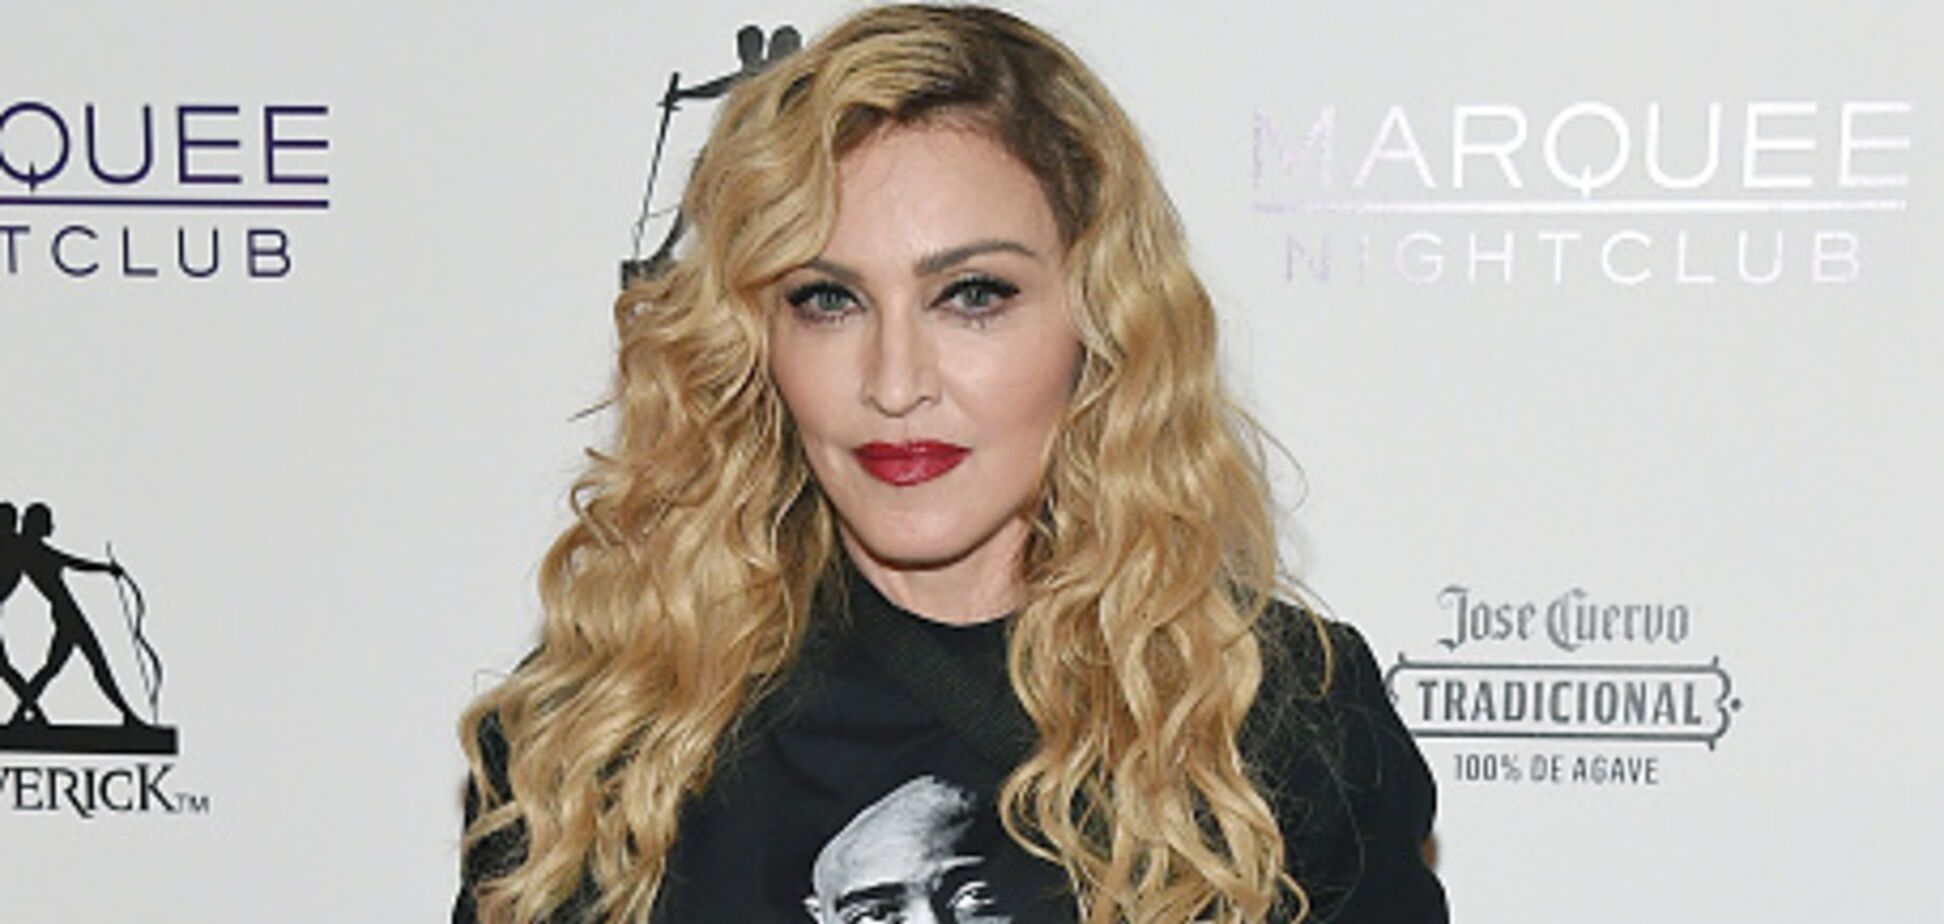 Умерли за сутки: Мадонна потеряла троих близких людей из-за коронавируса